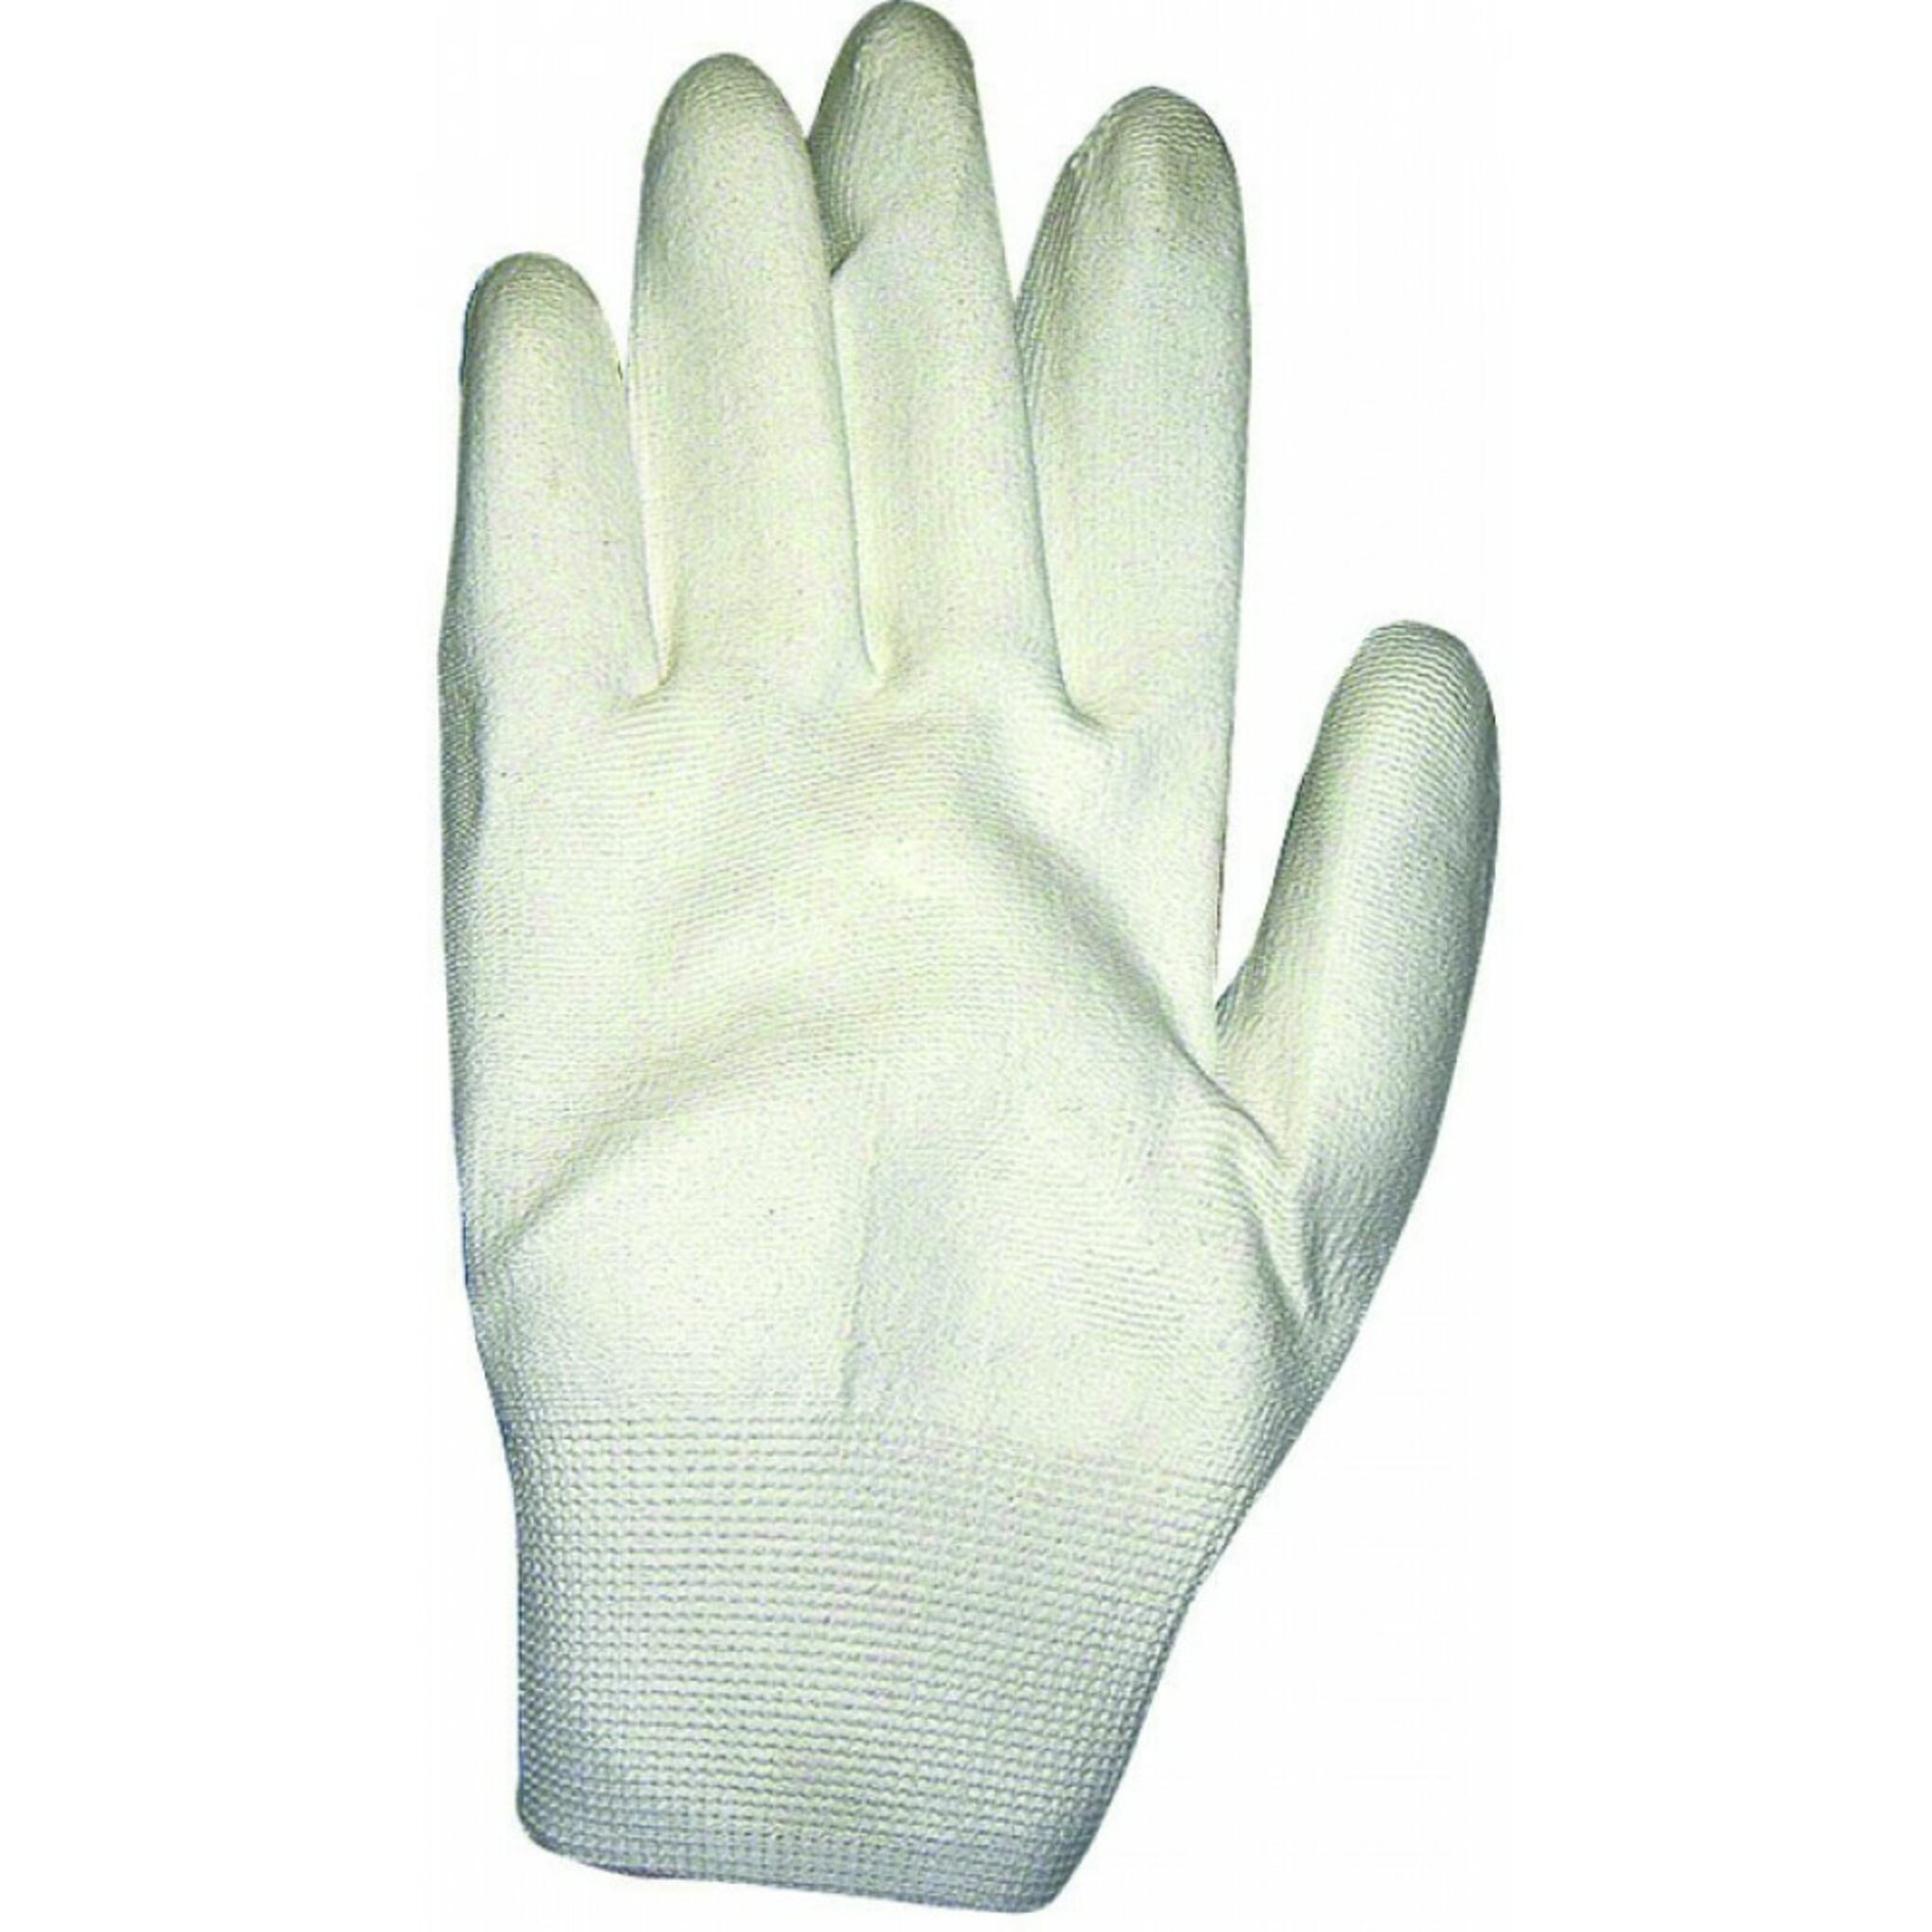 Schuller Eh'klar fine knit gloves for painting work